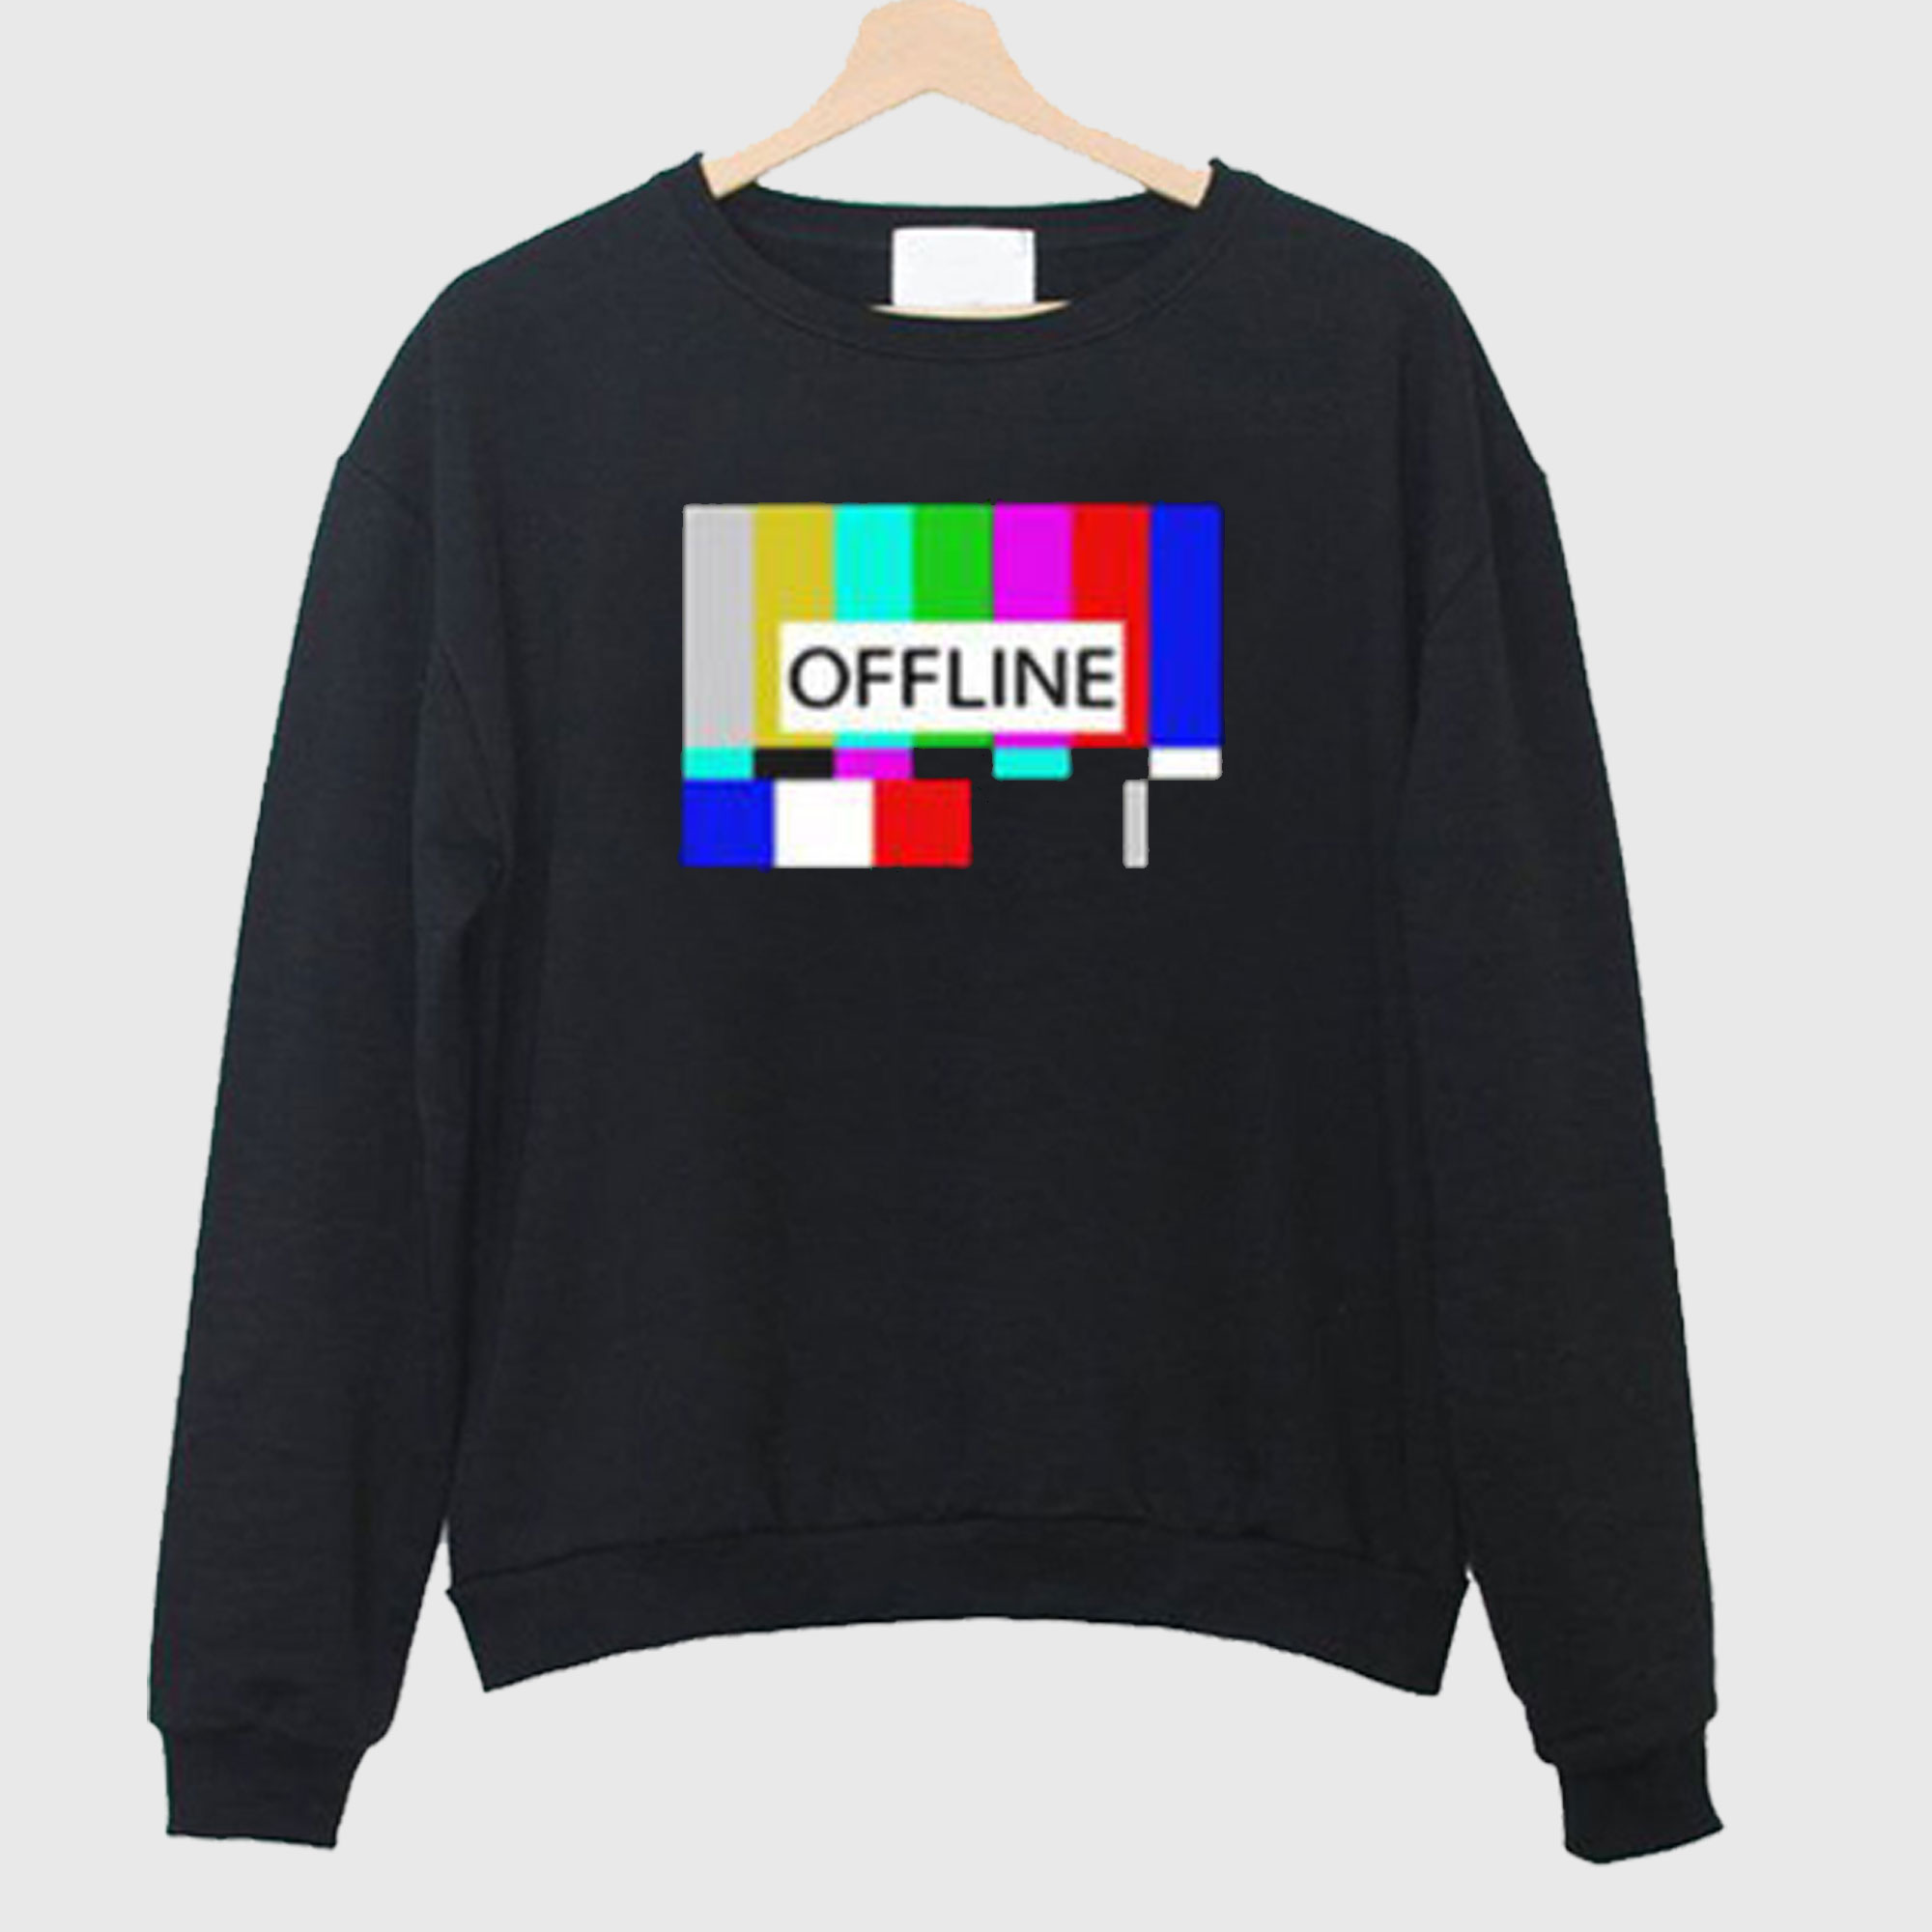 Offline Sweatshirt